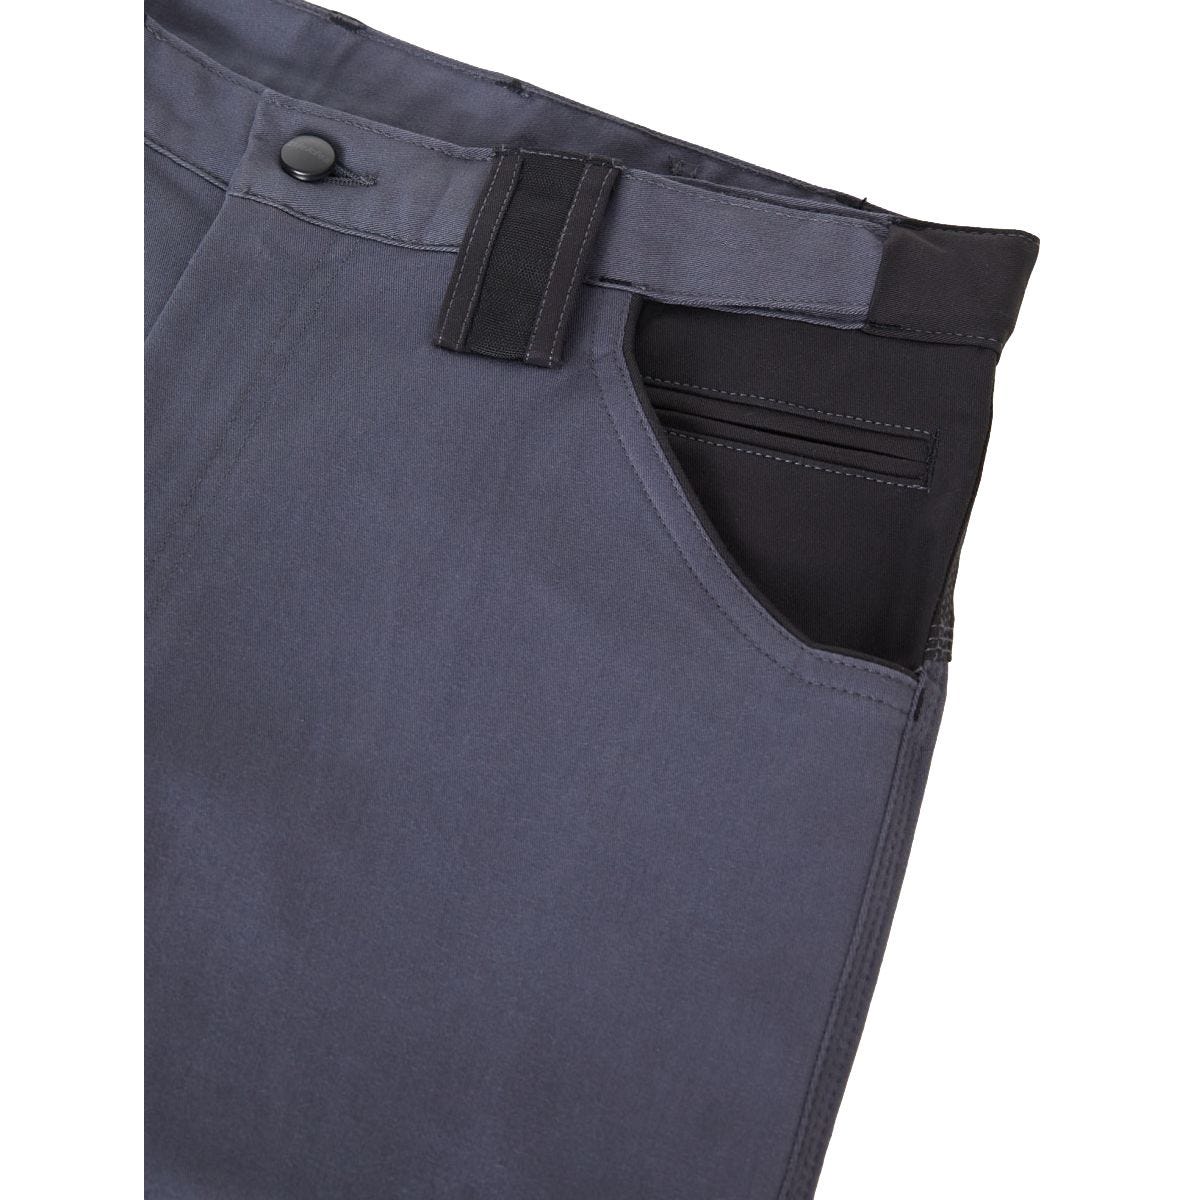 Pantalon de travail GDT Premium gris/noir - Dickies - Taille 48 4